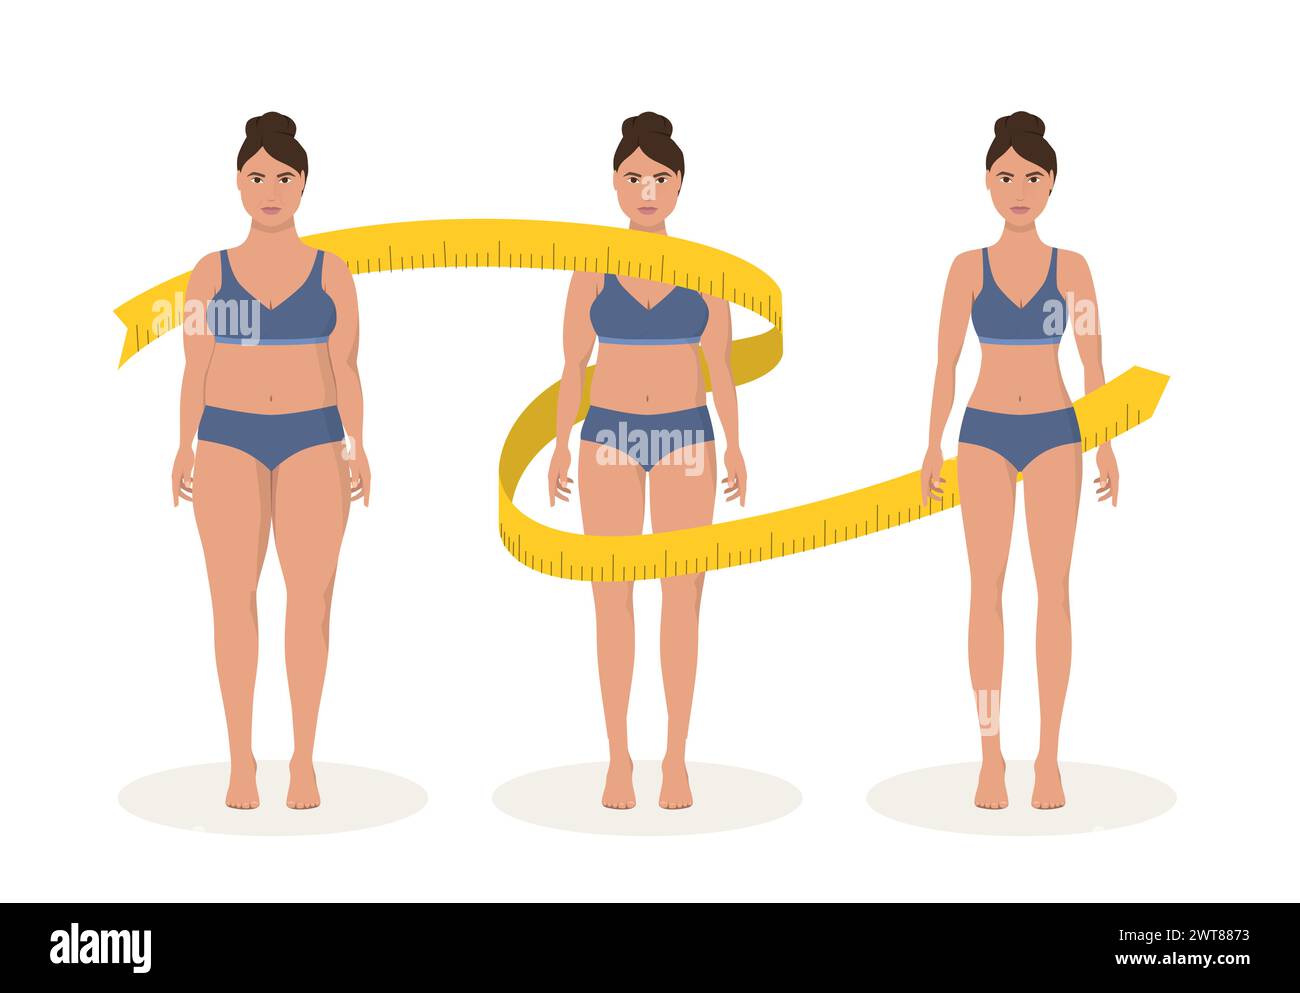 Fette und dünne Frauen-Gewichtsreduktion-Konzept. Ernährung und Fitness. Vor und nach Körperform, das Mädchen misst ihre schlanke Taille. Stock Vektor